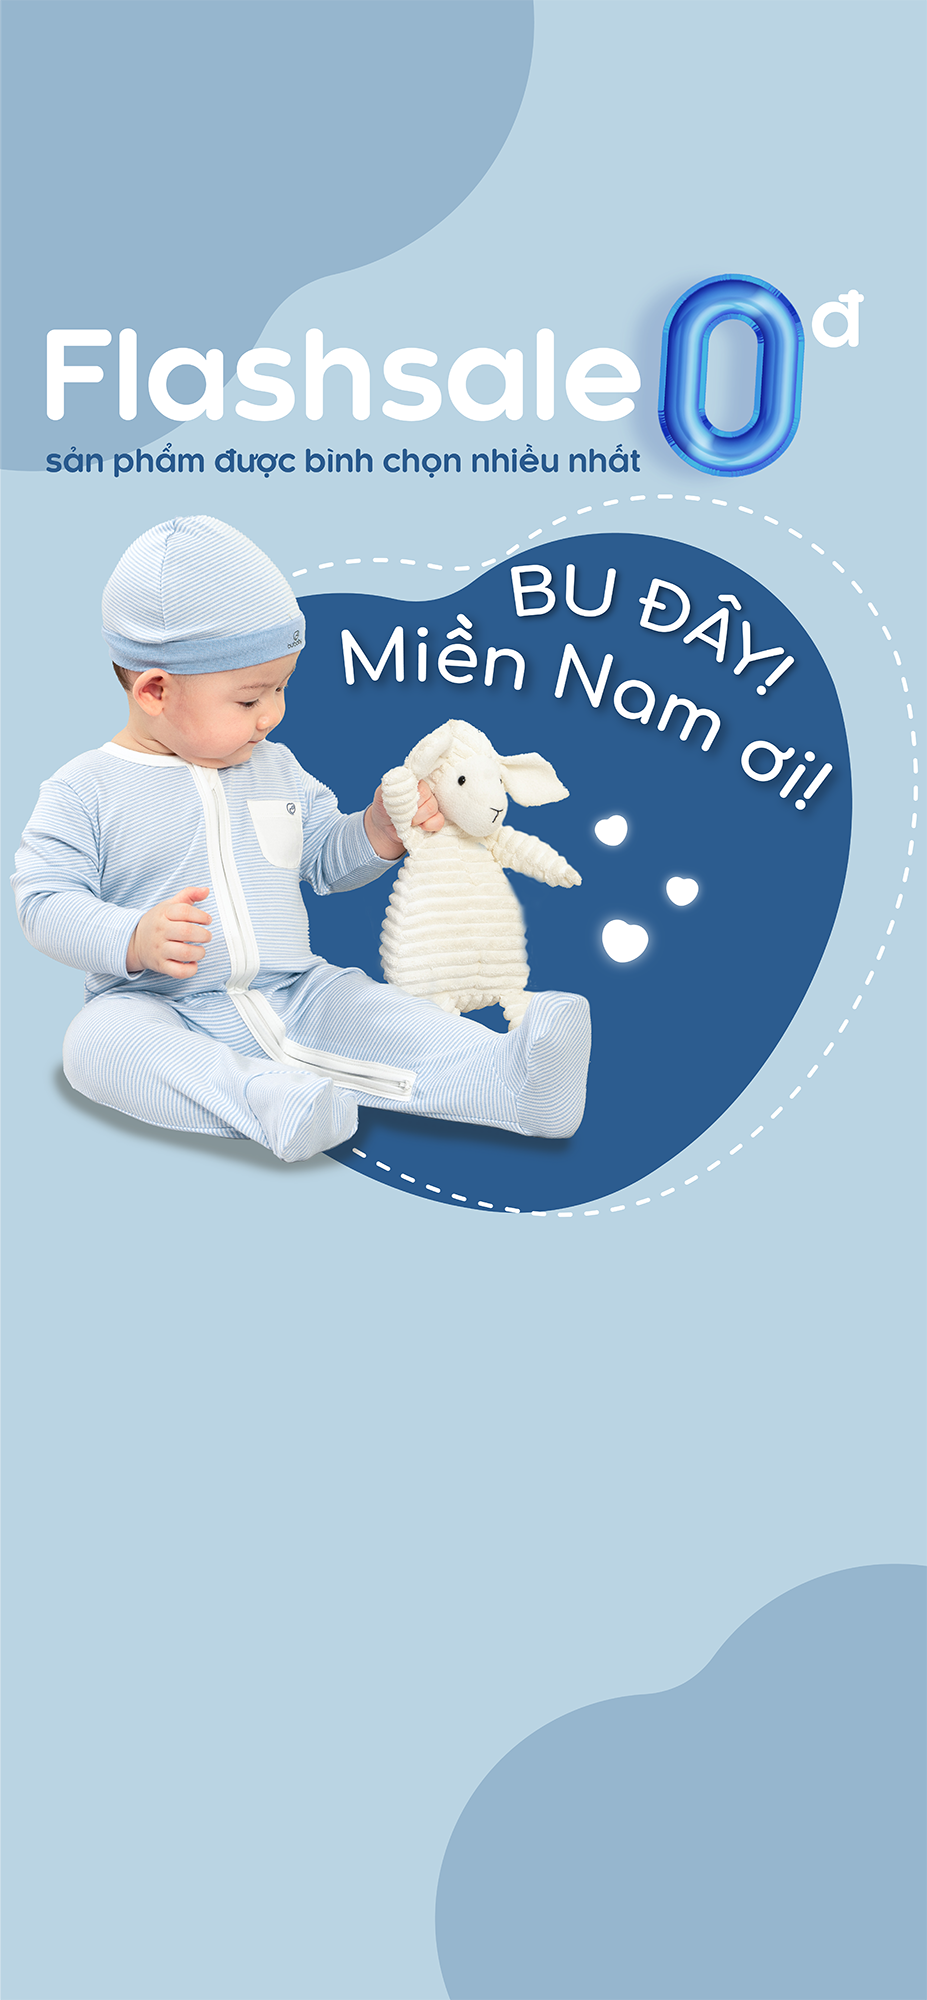 BU Baby - Thương hiệu quần áo an toàn, cao cấp dành cho trẻ sơ sinh.